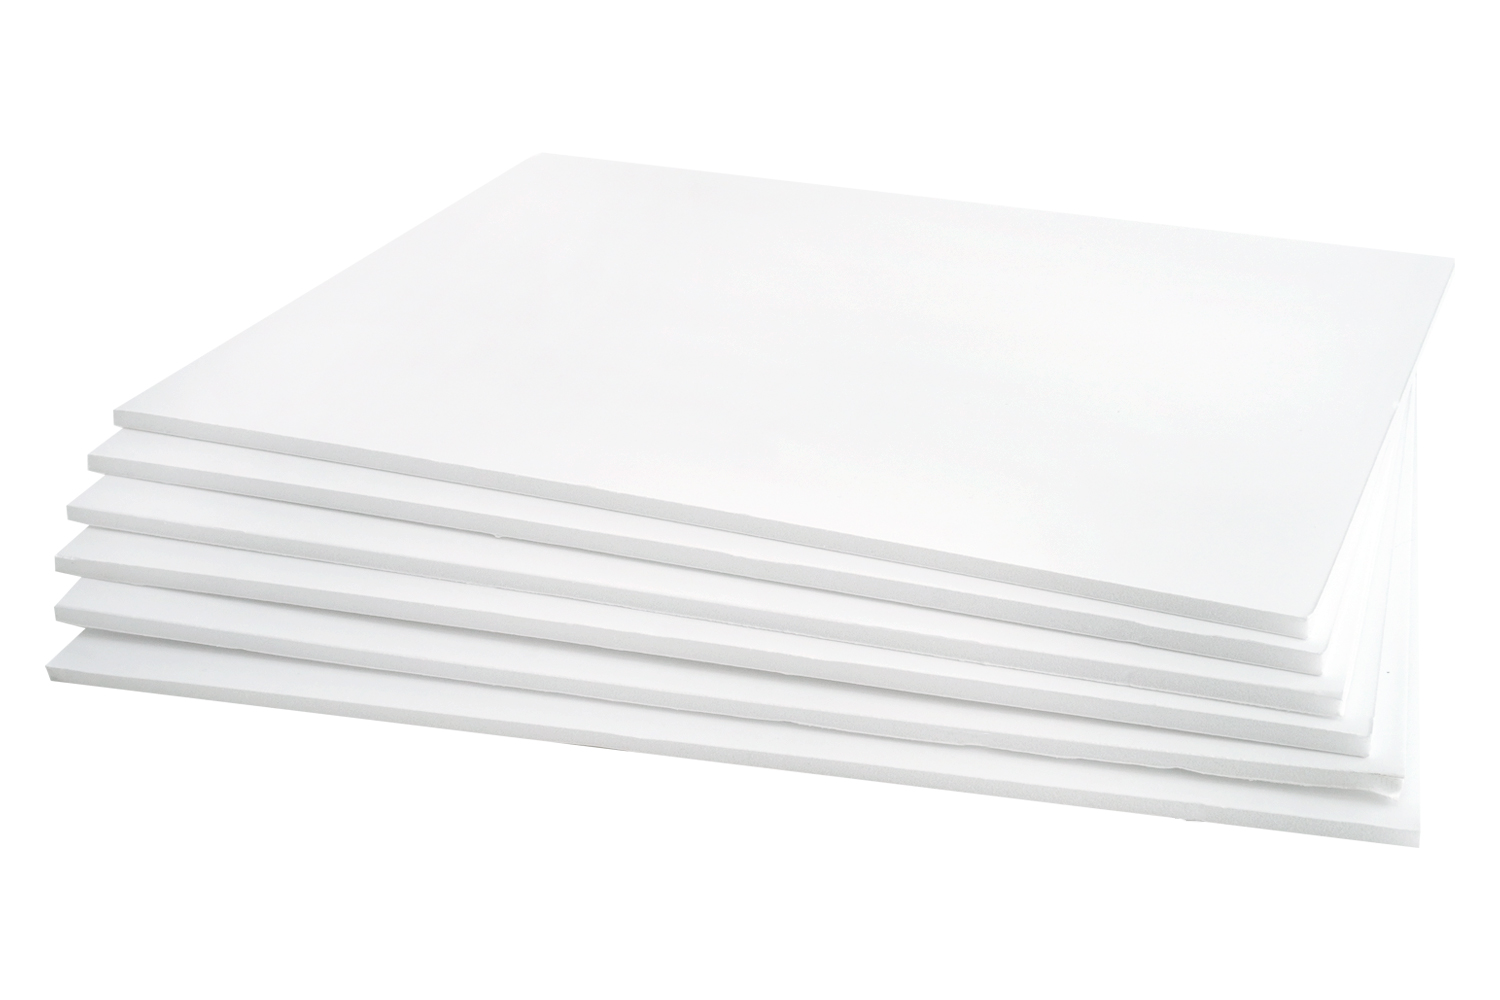 Carton mousse blanc 5 mm grand format 100x140 cm